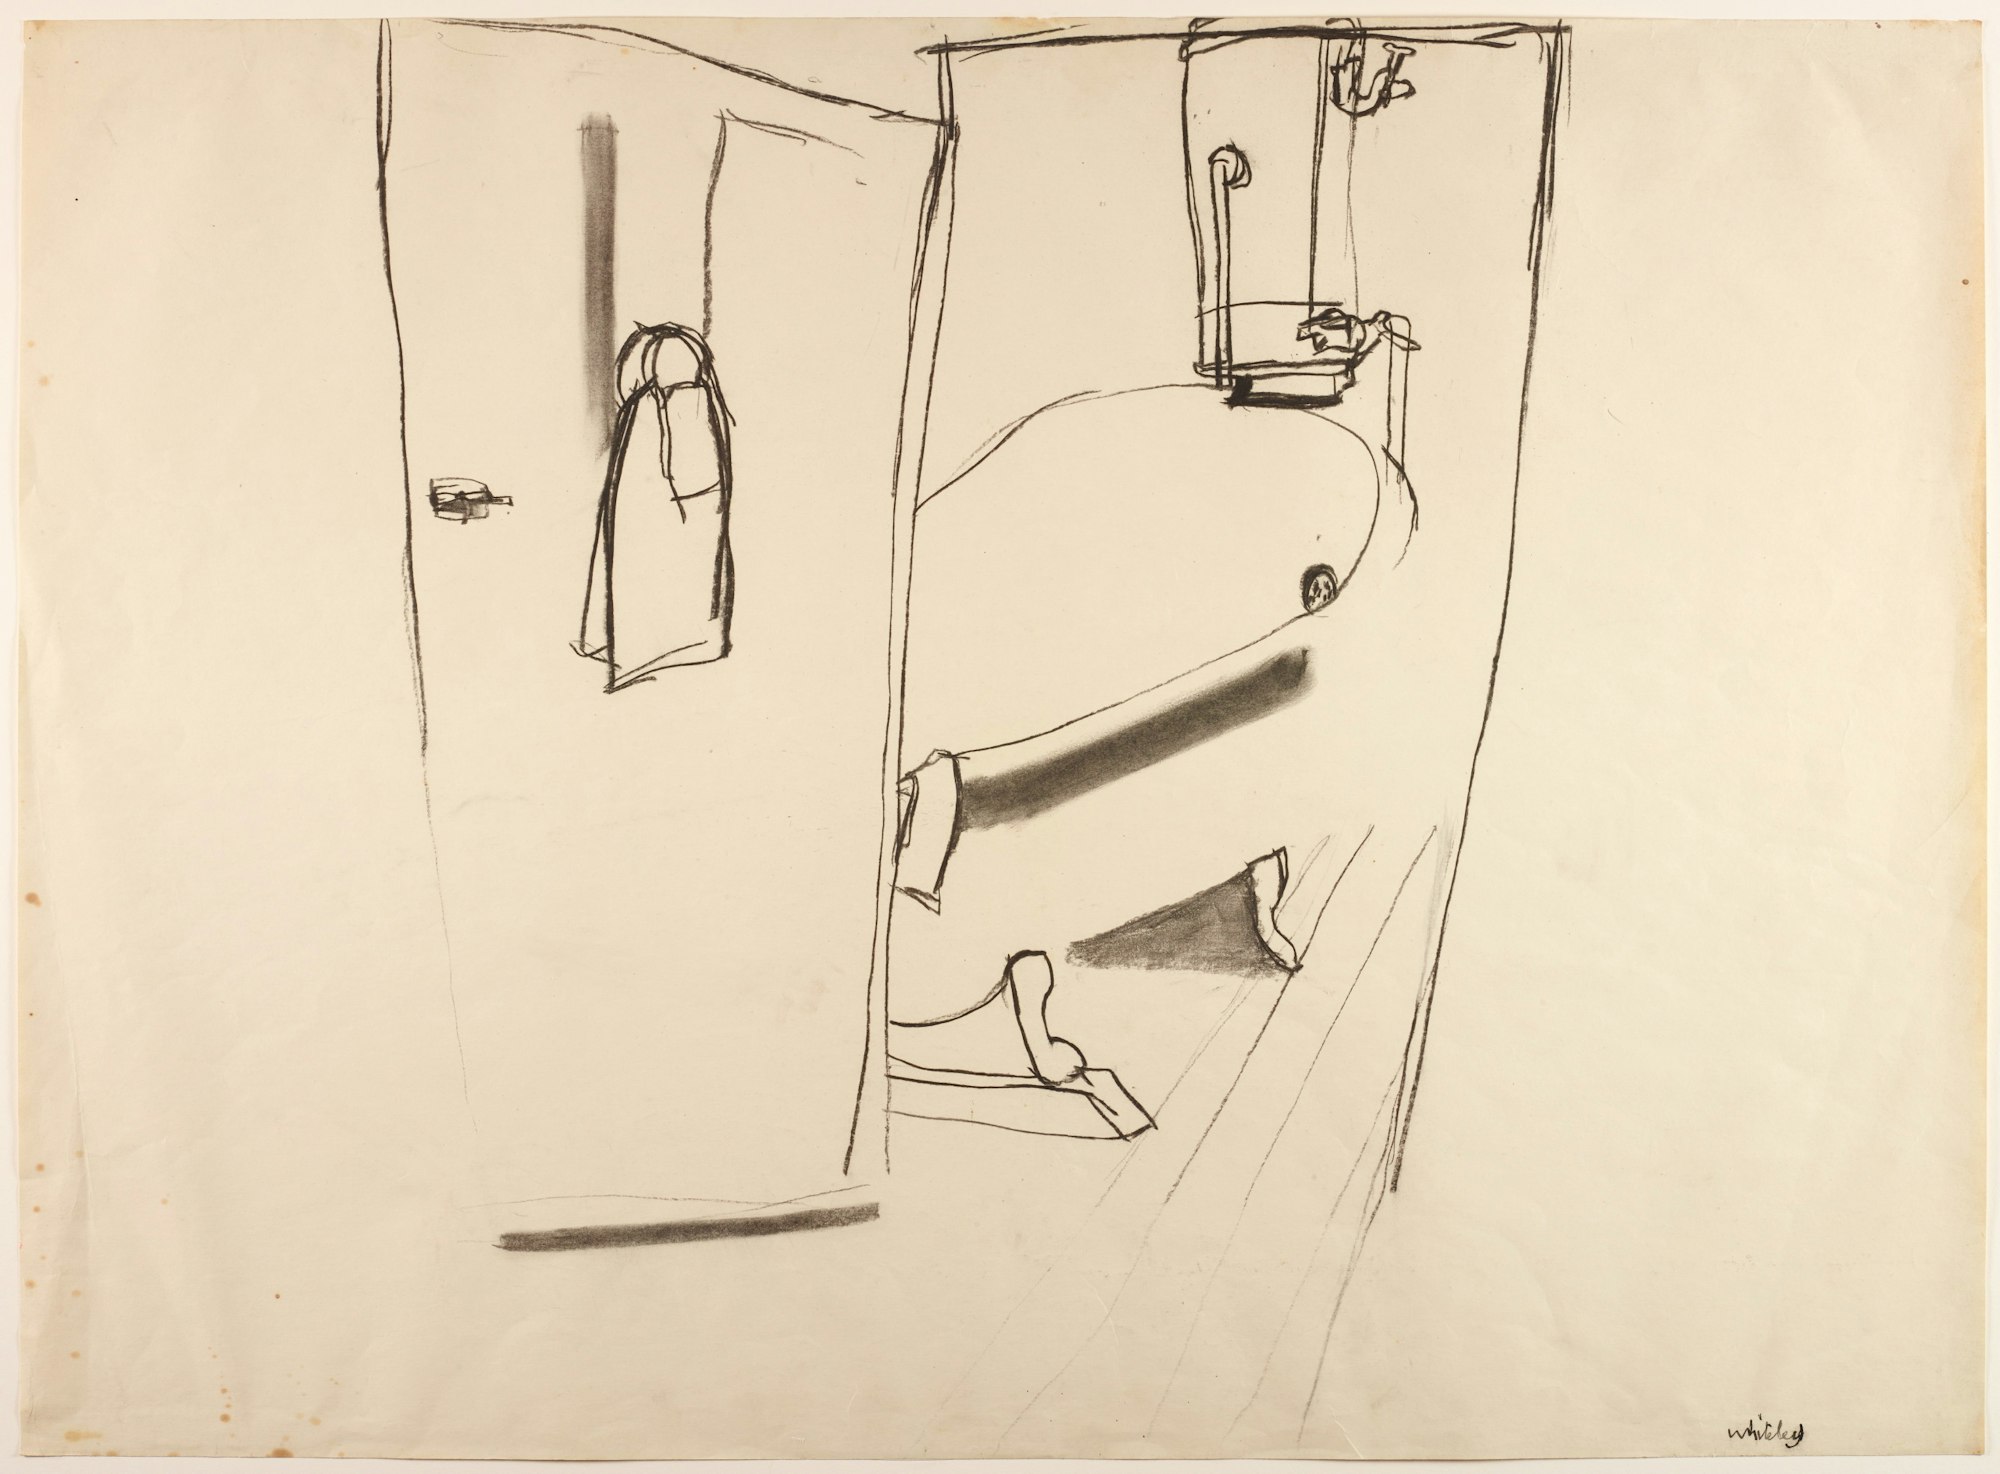 Brett Whiteley, Bathroom scene 1965, Brett Whiteley Studio Collection © Wendy Whiteley/Copyright Agency